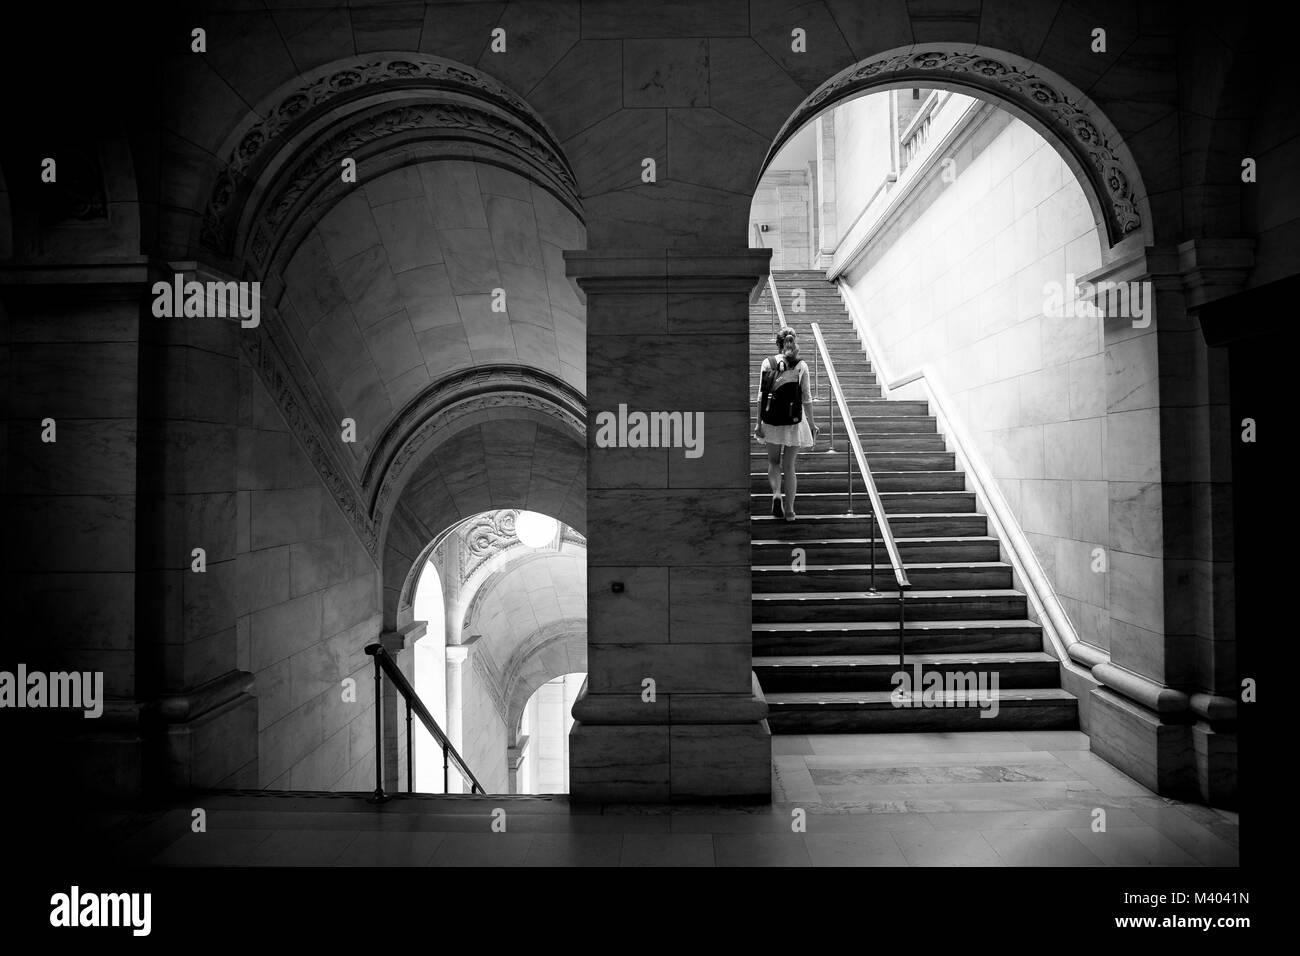 New York Public Library de l'intérieur. Image en noir et blanc d'une fille qui marche à travers une arcade et un peu d'escaliers. Banque D'Images